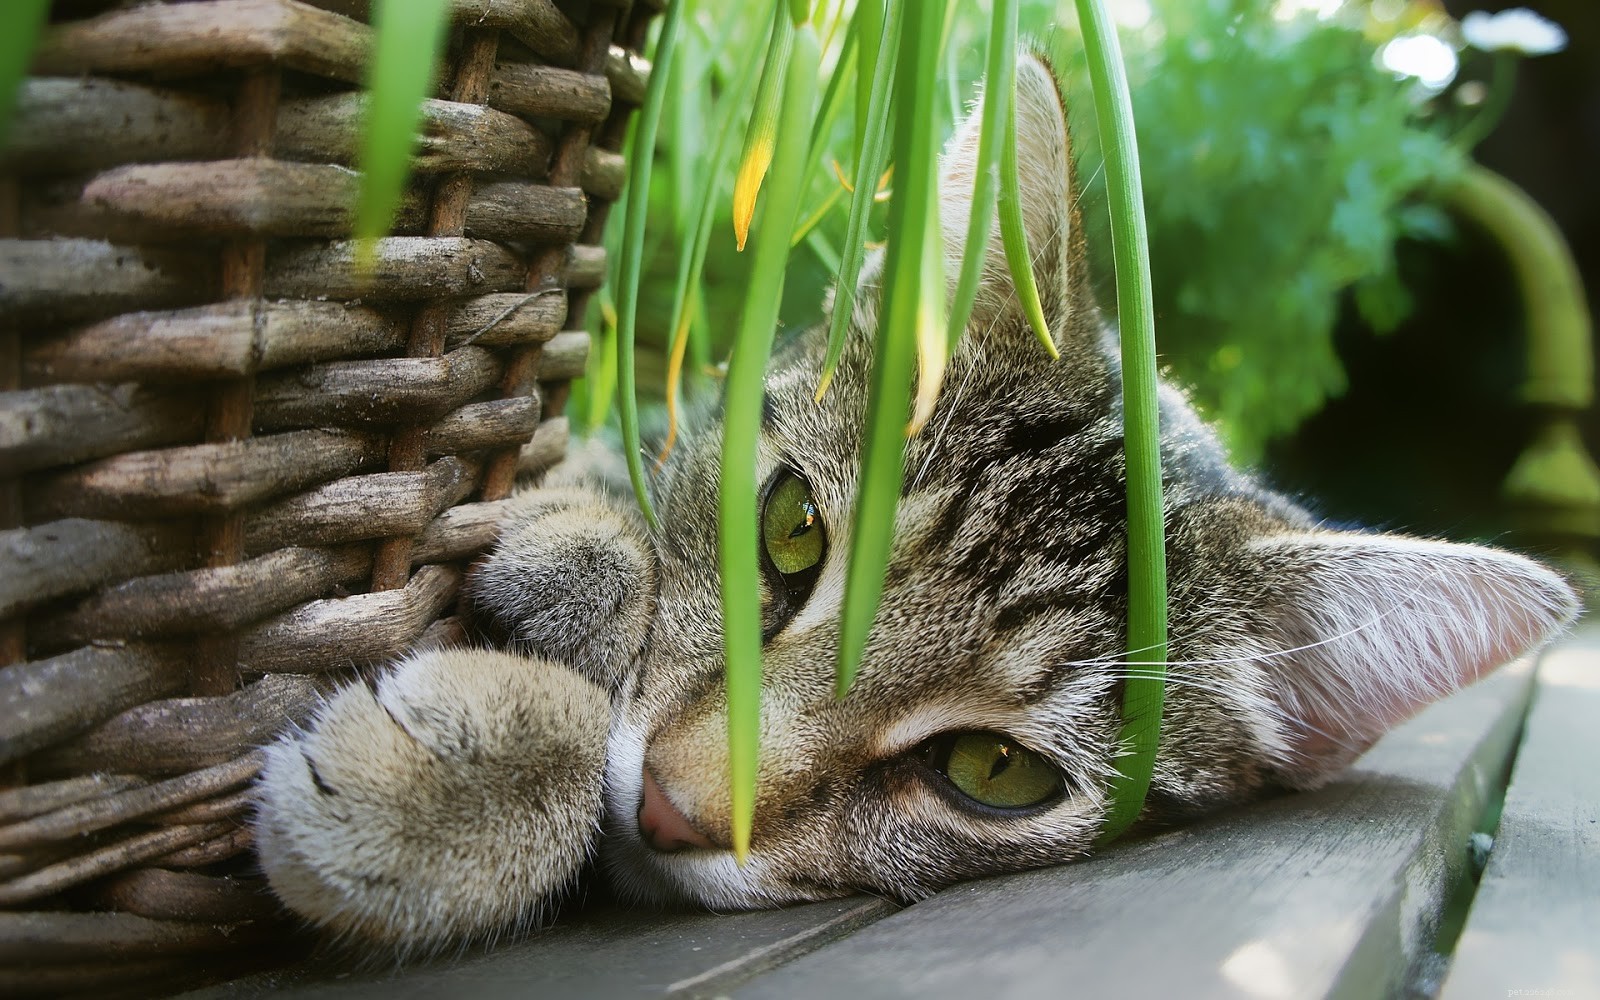 Växter som kan göra din katt sjuk och sådana som är säkra för din kattvän